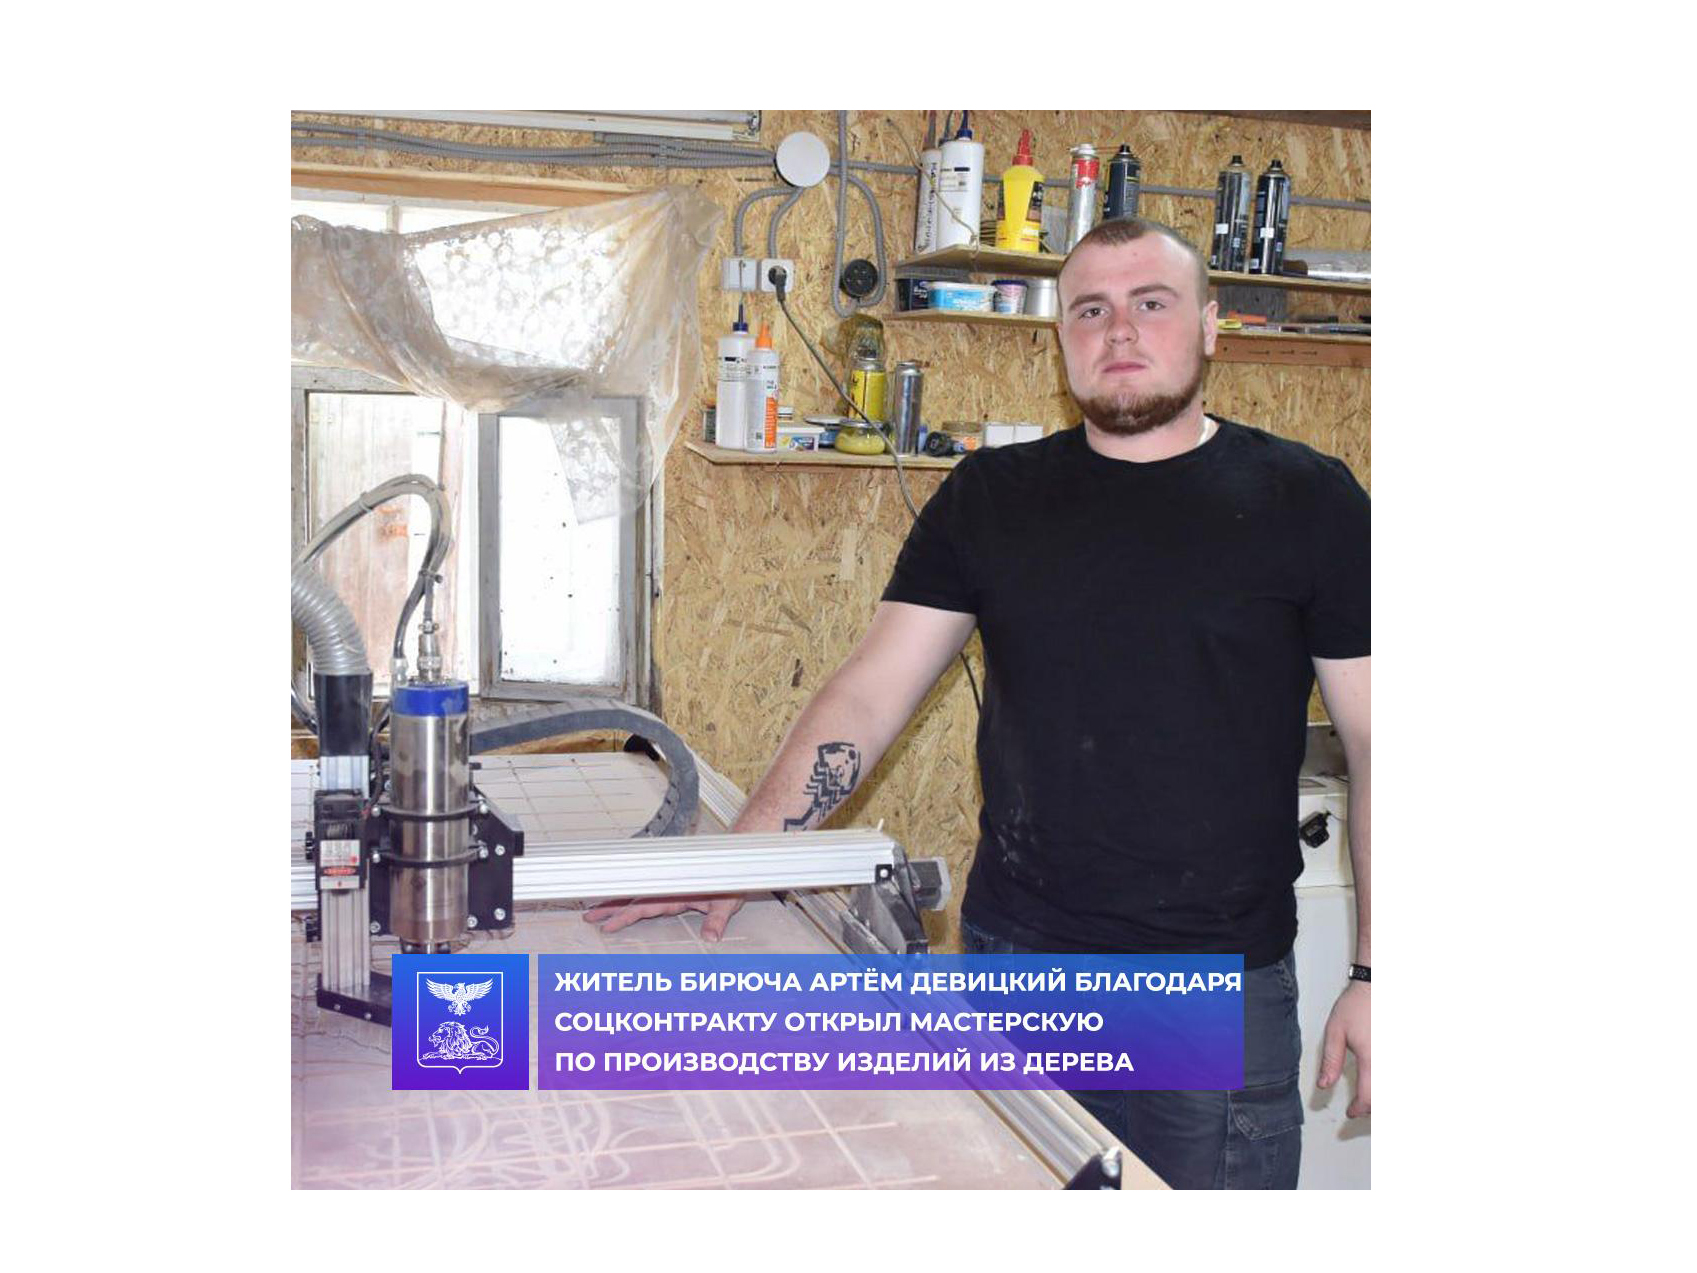 Житель Бирюча Артём Девицкий благодаря соцконтракту открыл мастерскую по производству изделий из дерева.